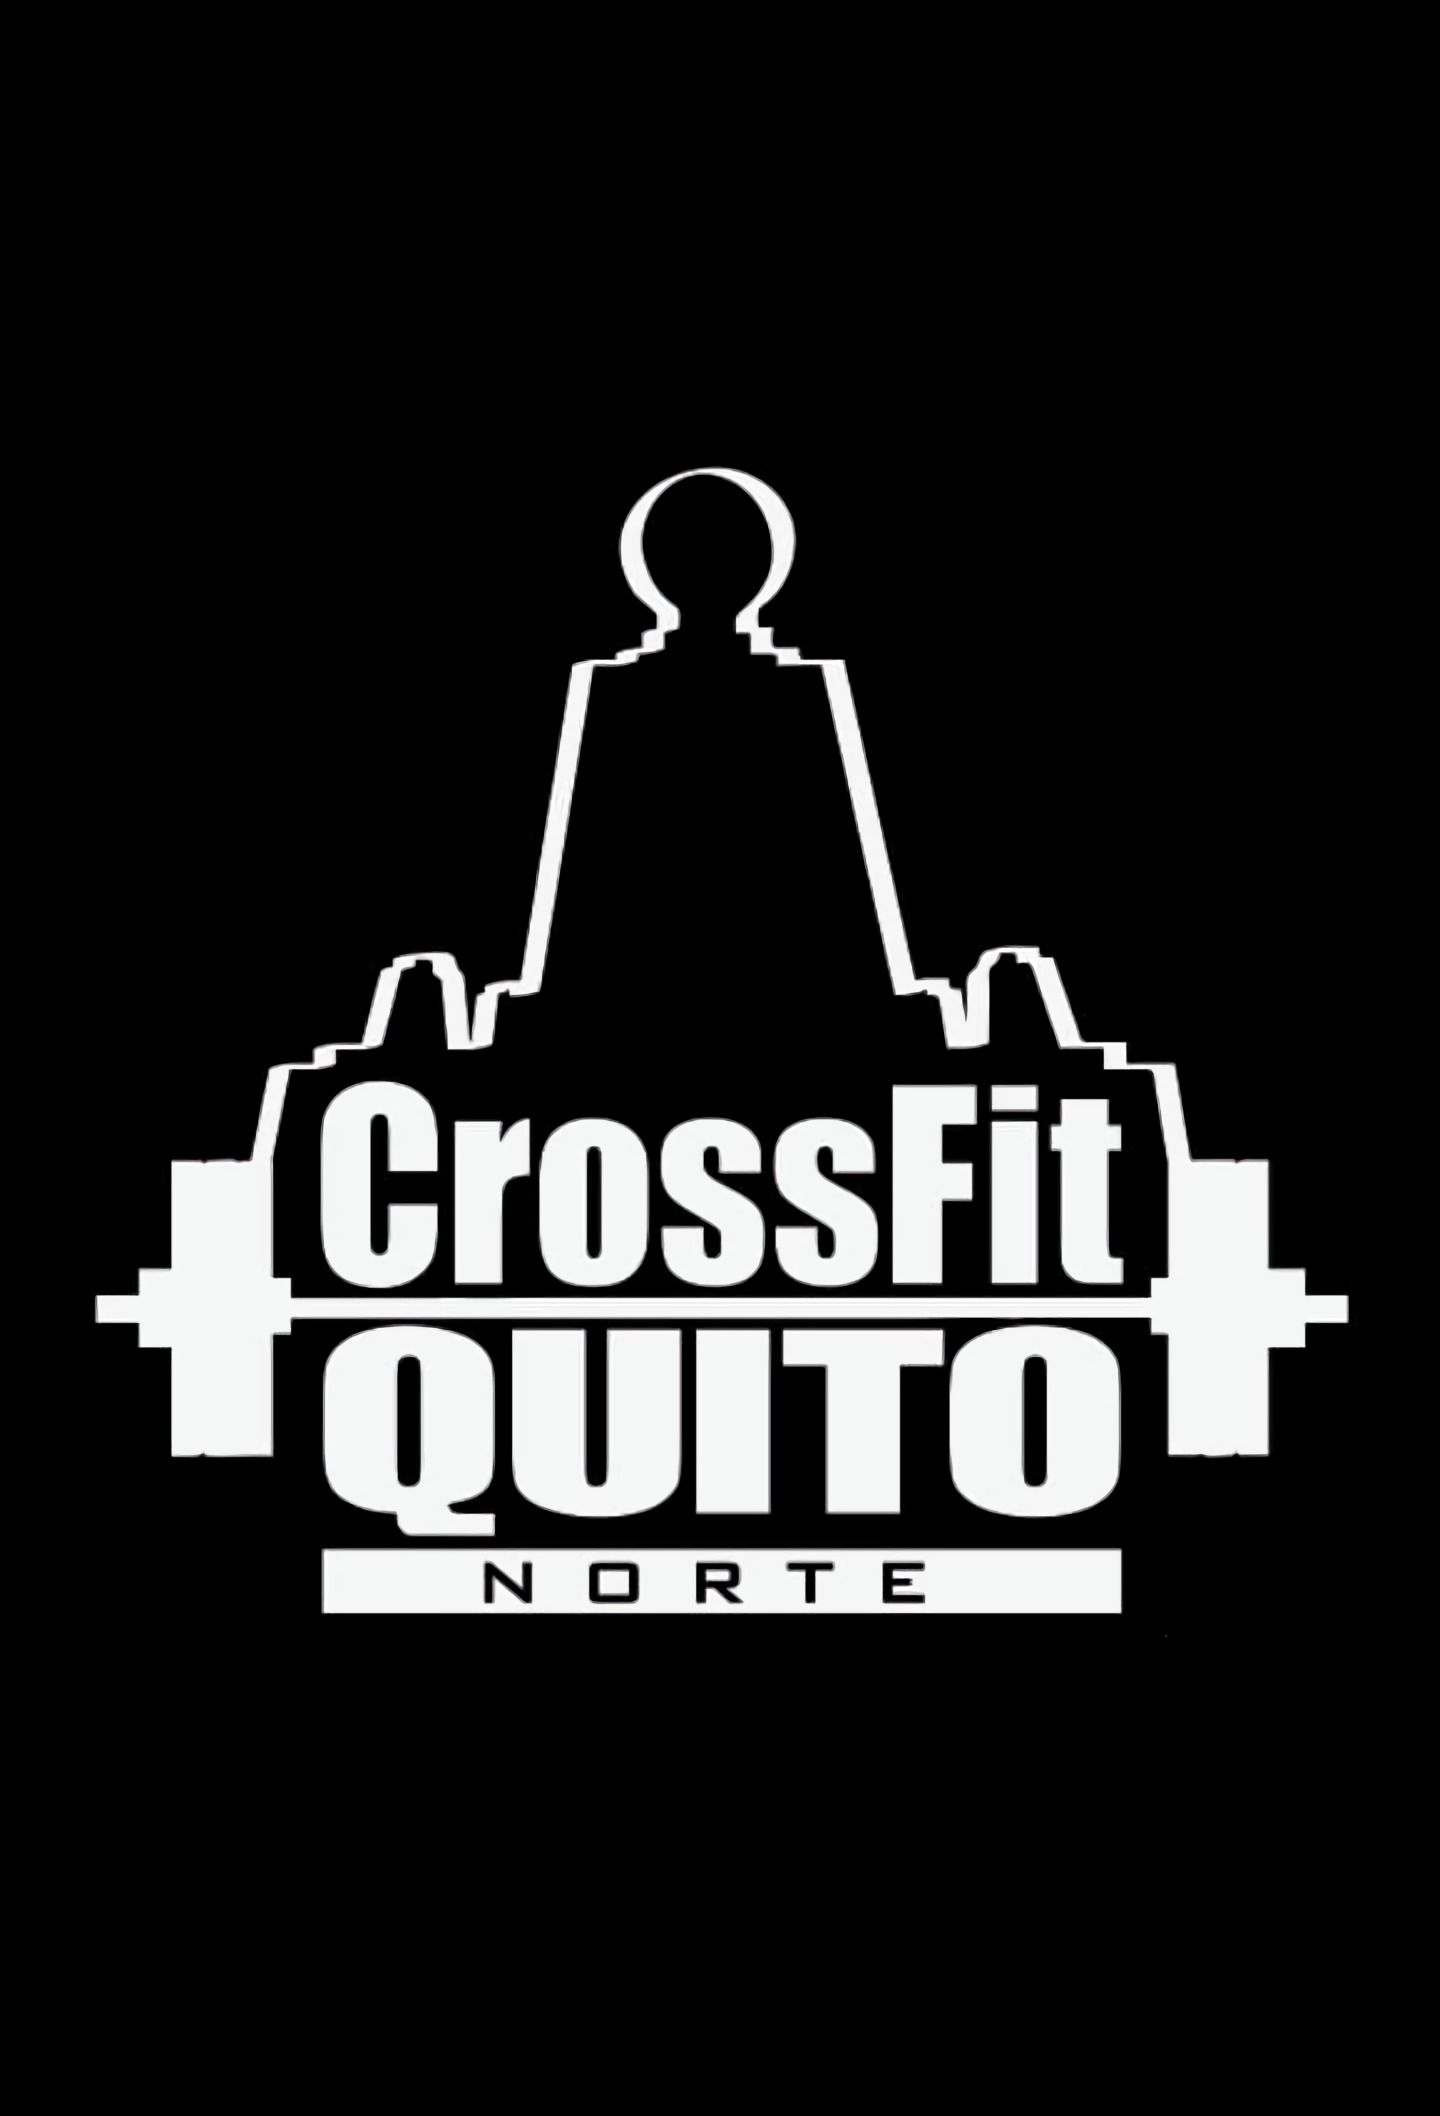 Crossfit-crossfit-quito-norte-6628